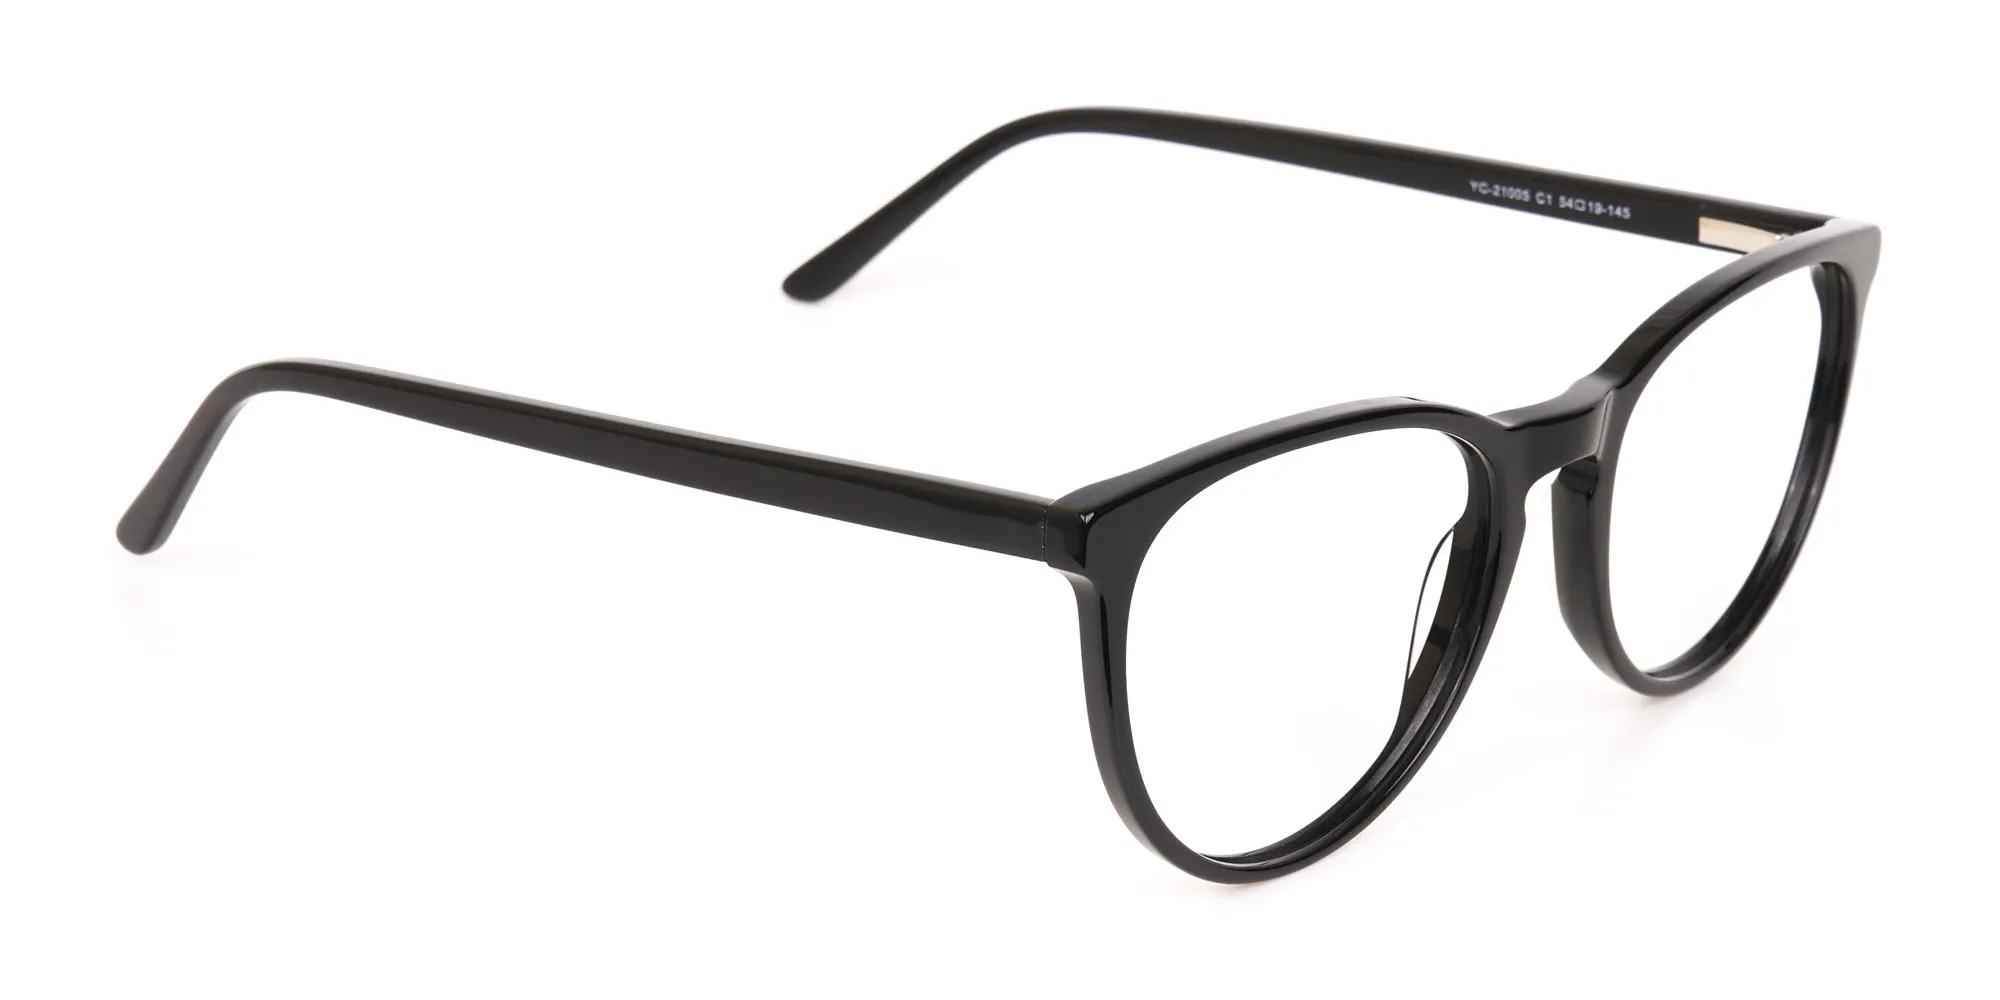 Black Acetate Round Eyeglasses Frame Unisex-2